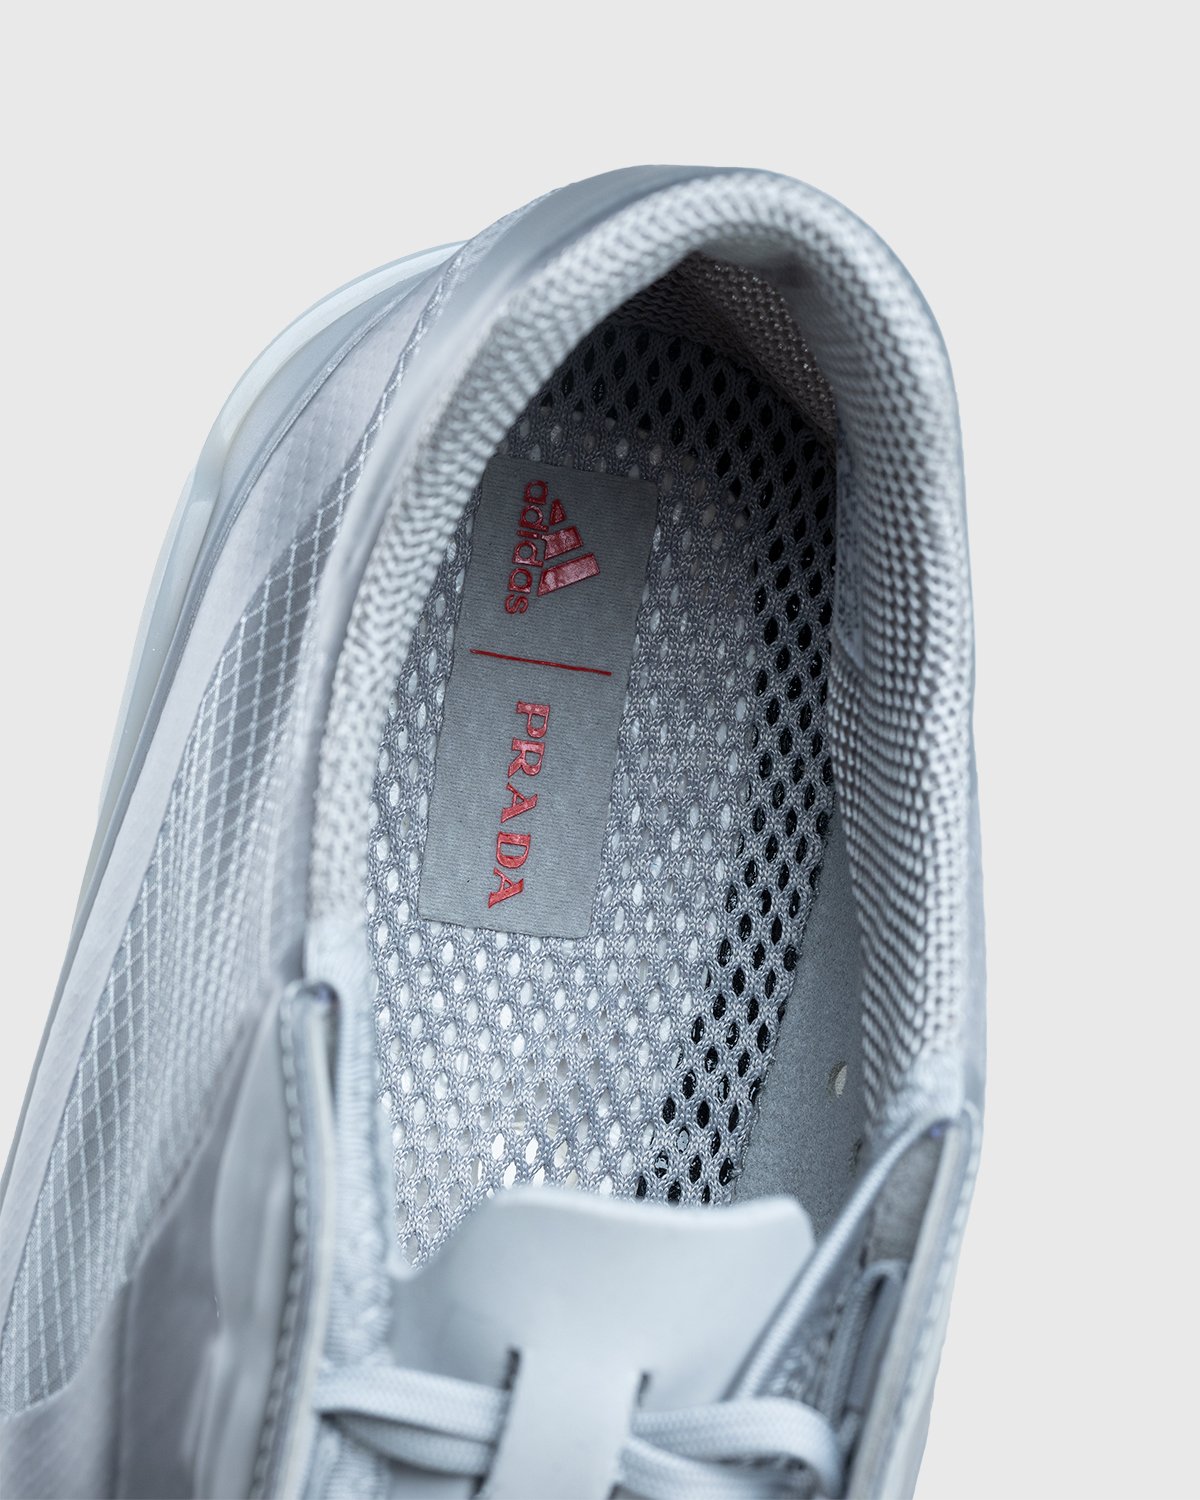 Adidas x Prada - A+P Luna Rossa 21 Performance - Footwear - Grey - Image 6